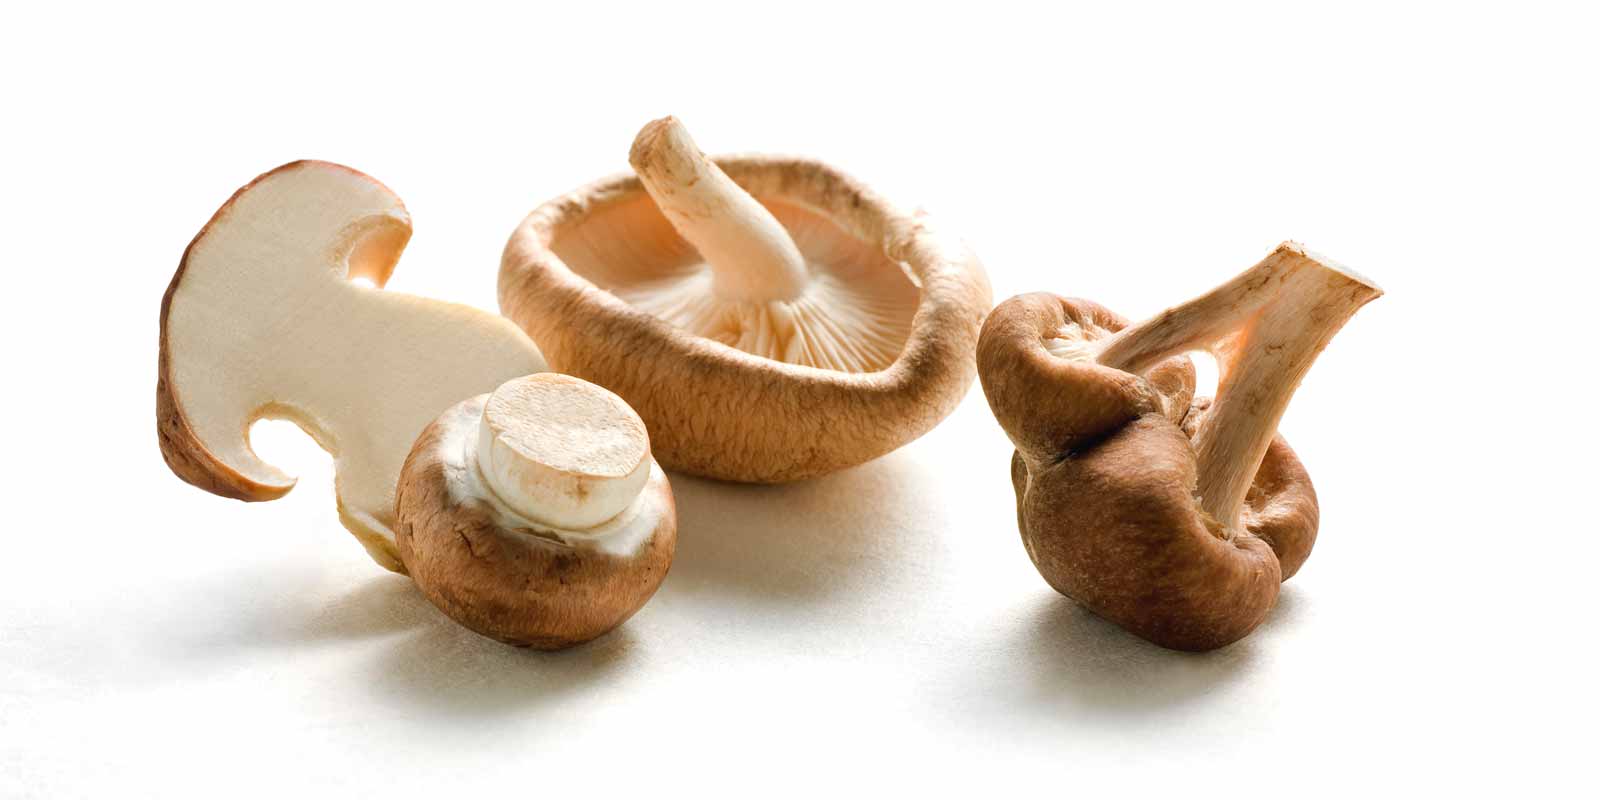 Wiberg-paddenstoelen Vochtige zomers zorgen ervoor dat paddenstoelen uit de grond ontkiemen. Ontdek de fascinerende WIBERG-wereld van paddenstoelen, die de voortreffelijke smaak van deze kleine natuurwonderen gemakkelijk in uw keuken en in uw kookpotten brengt. Of ze nu gekookt, gebakken of gestoofd worden: champignons zijn op zichzelf al een smaakmaker.